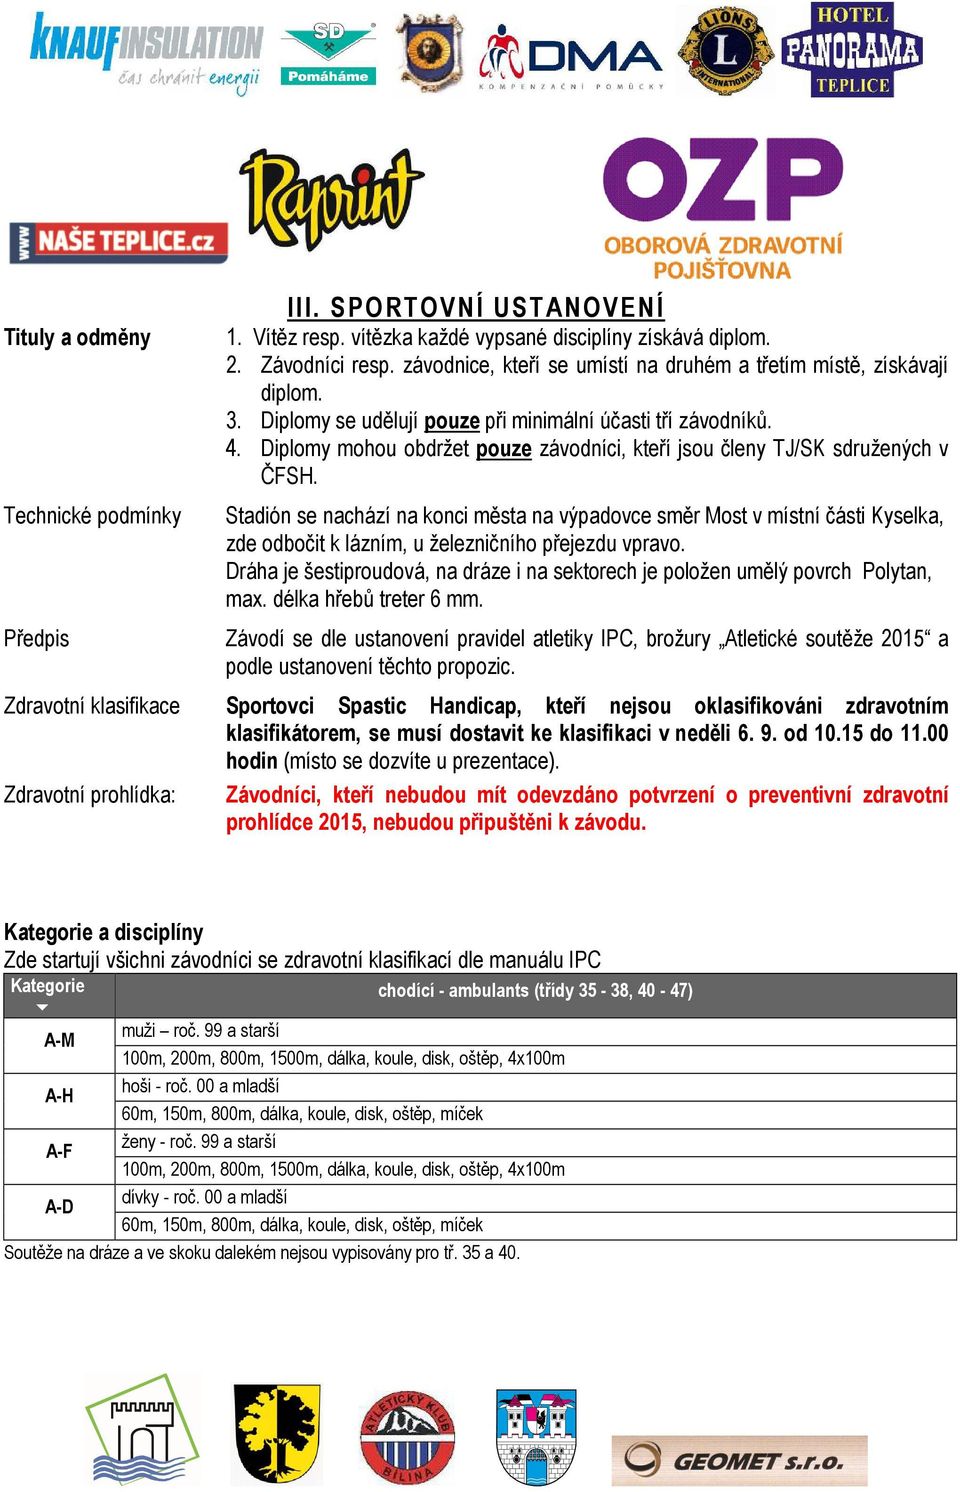 Diplomy mohou obdržet pouze závodníci, kteří jsou členy TJ/SK sdružených v ČFSH.